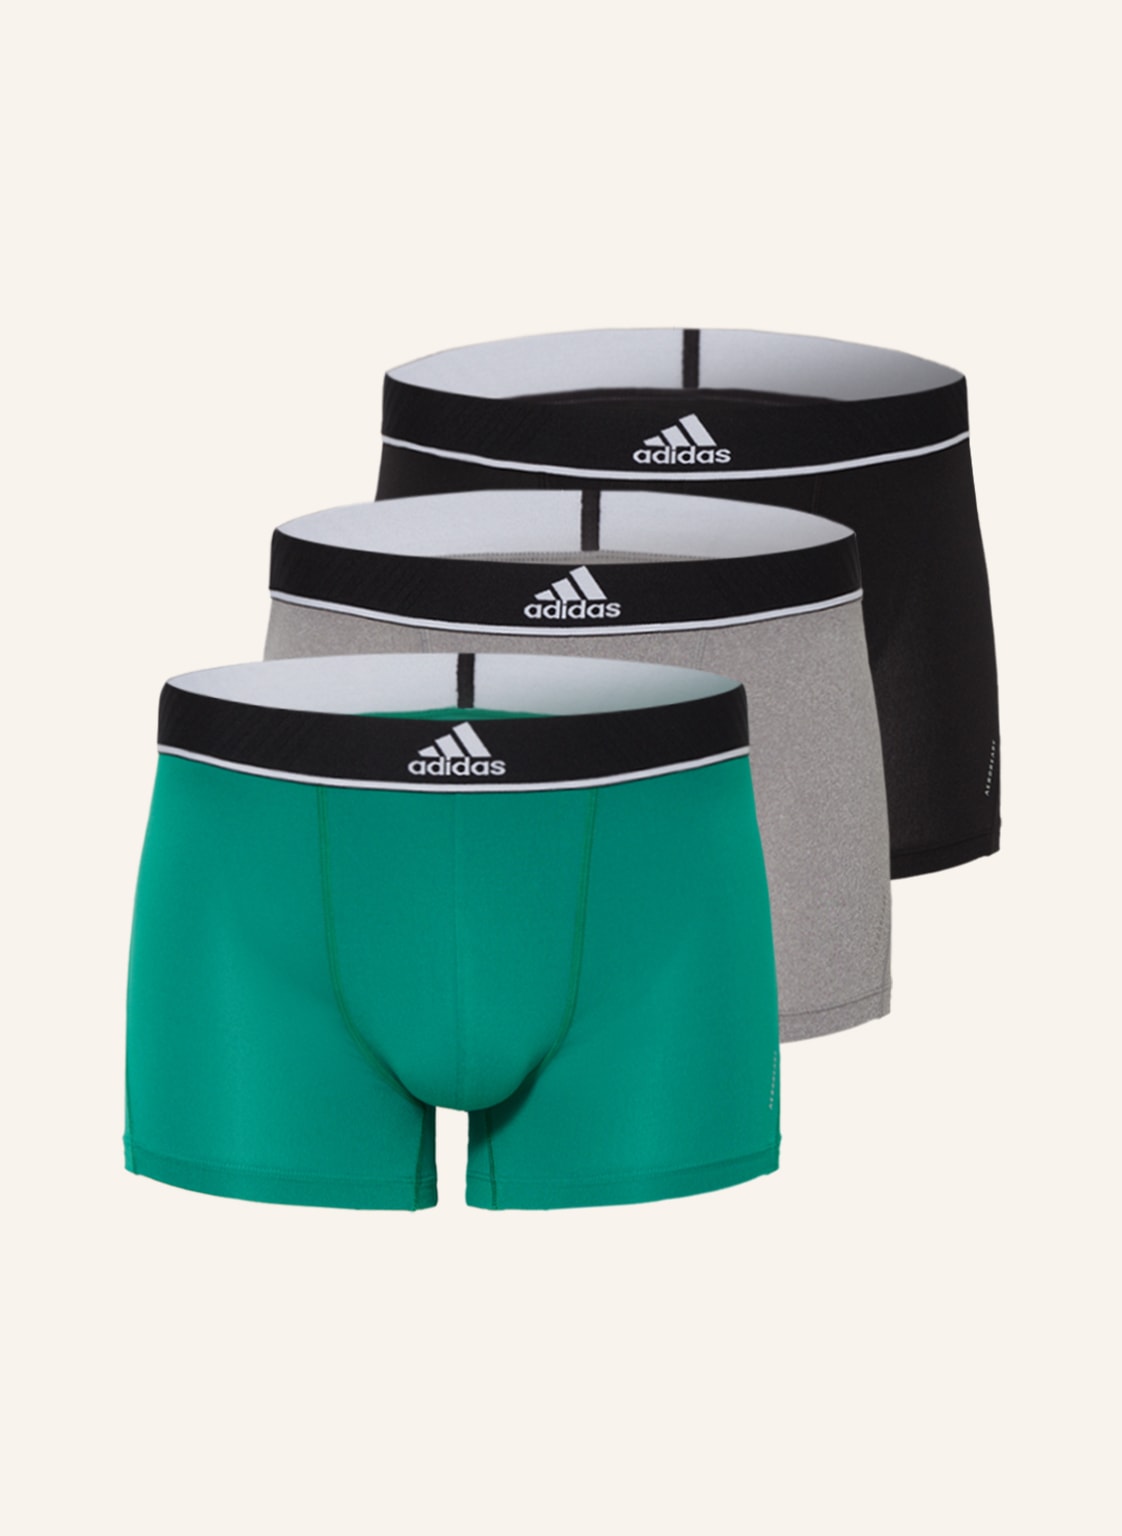 Image of Adidas 3er-Pack Boxershorts gruen